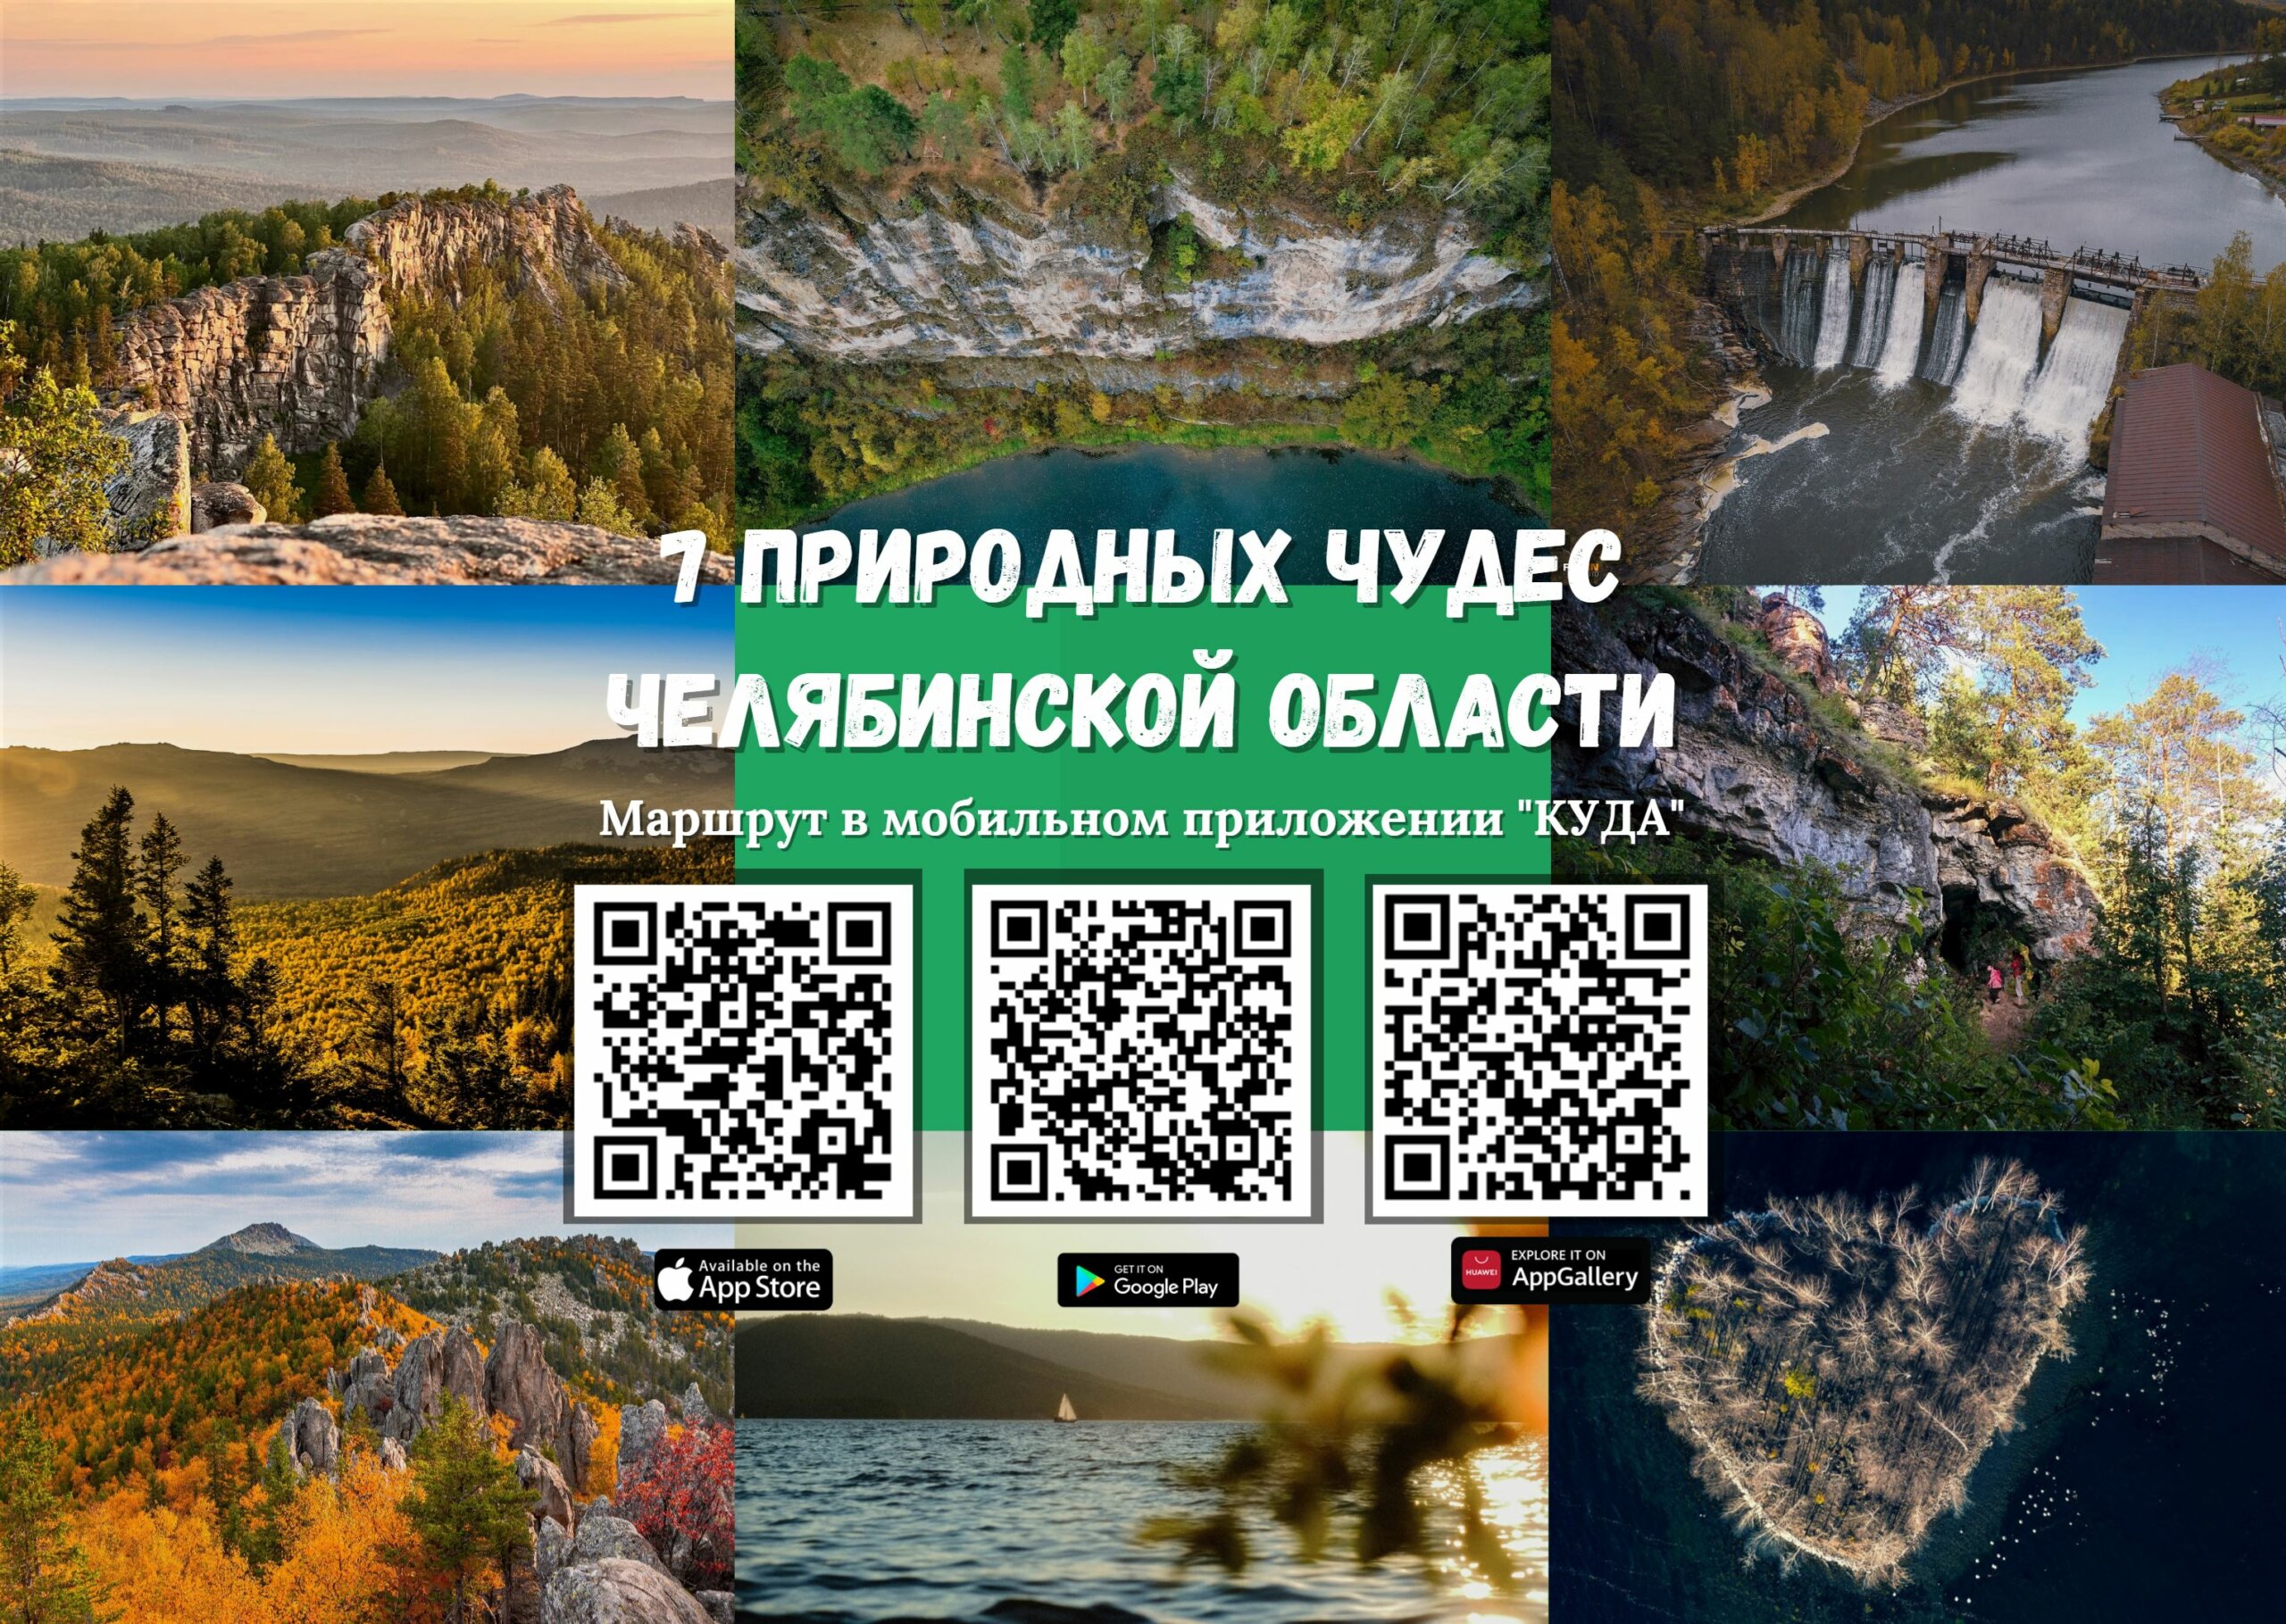 7 природных чудес Челябинской области